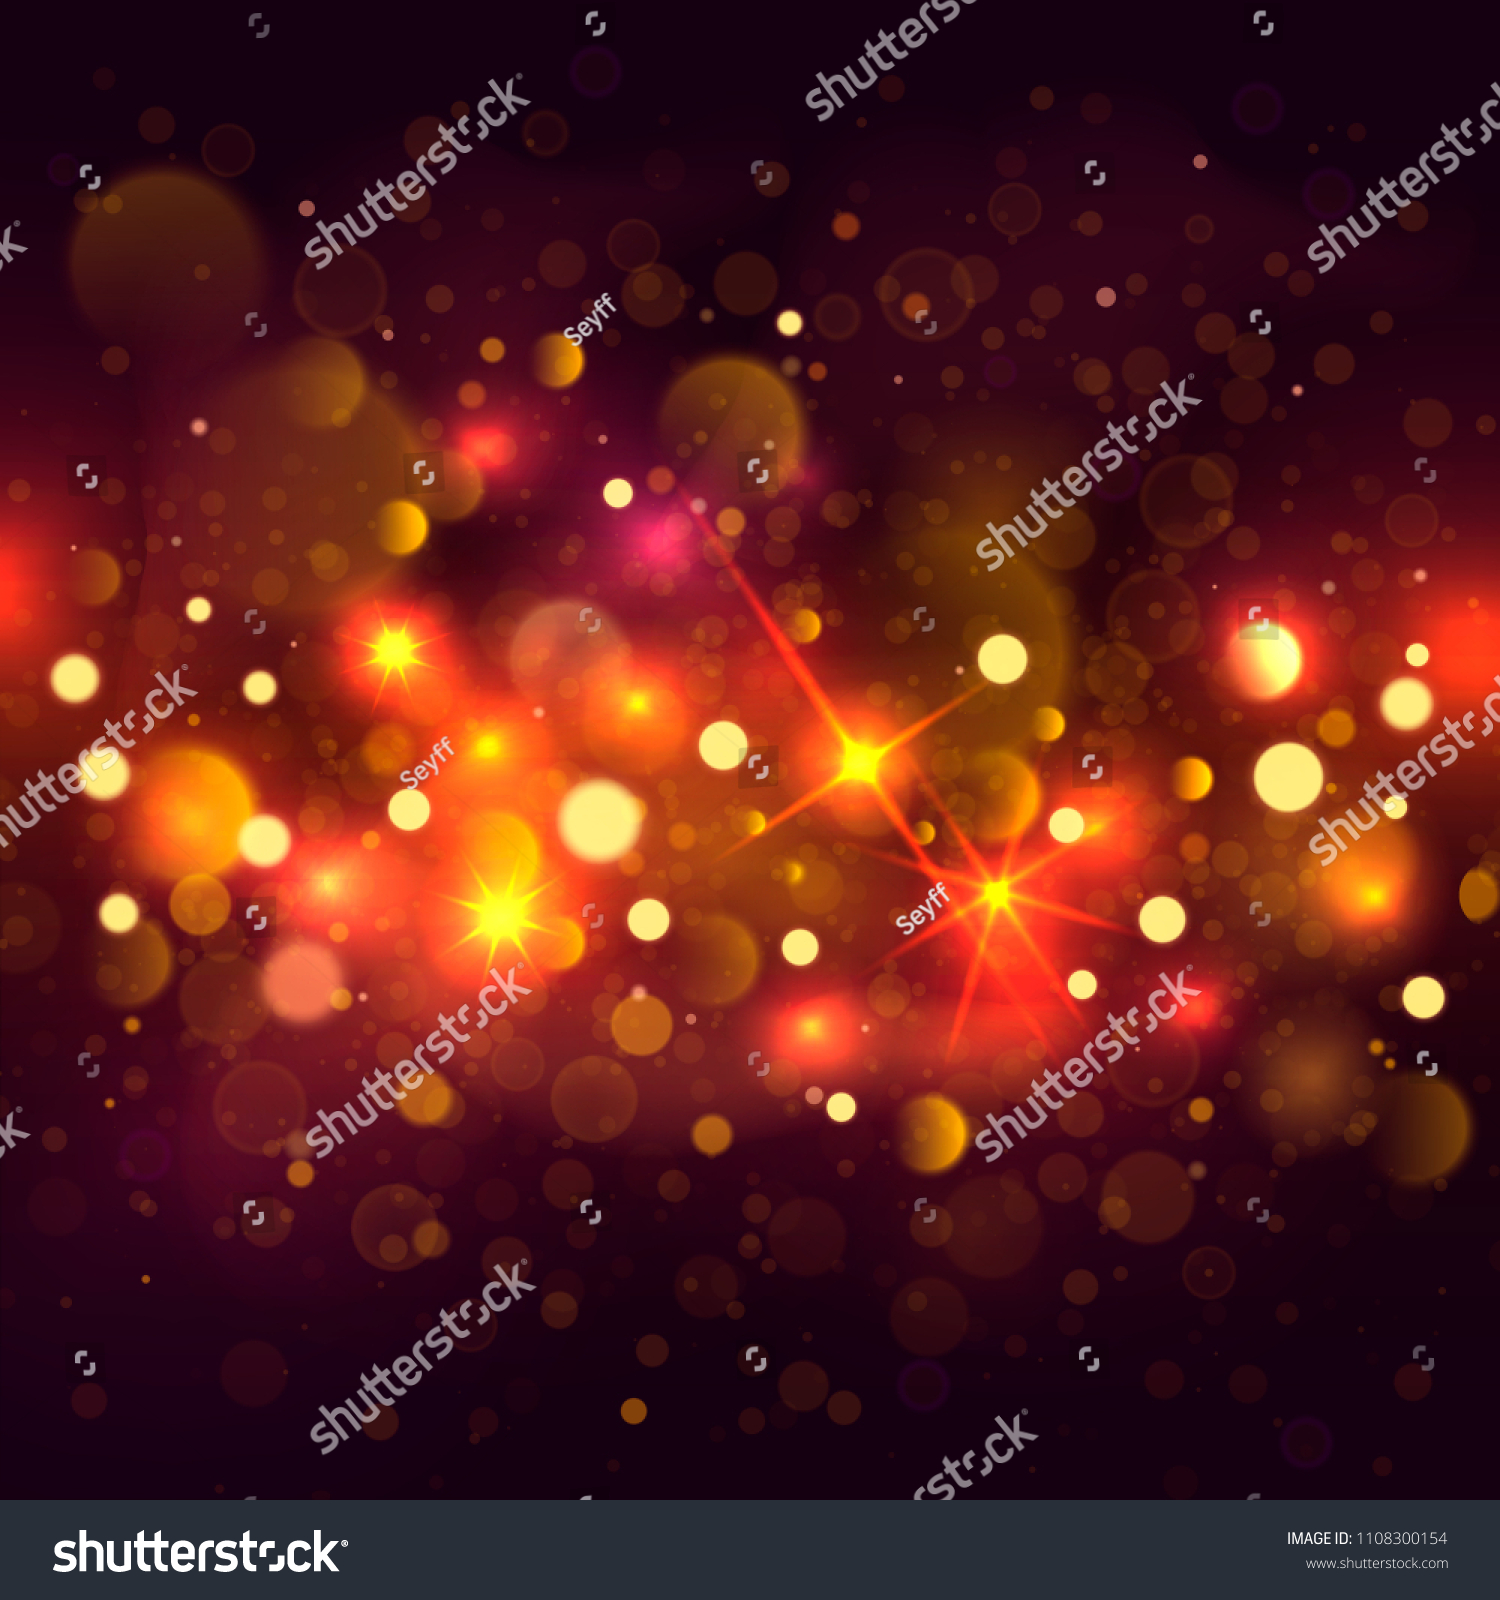 Glittering bokeh background. Illustration of glittering bokeh blots on dark background. #1108300154